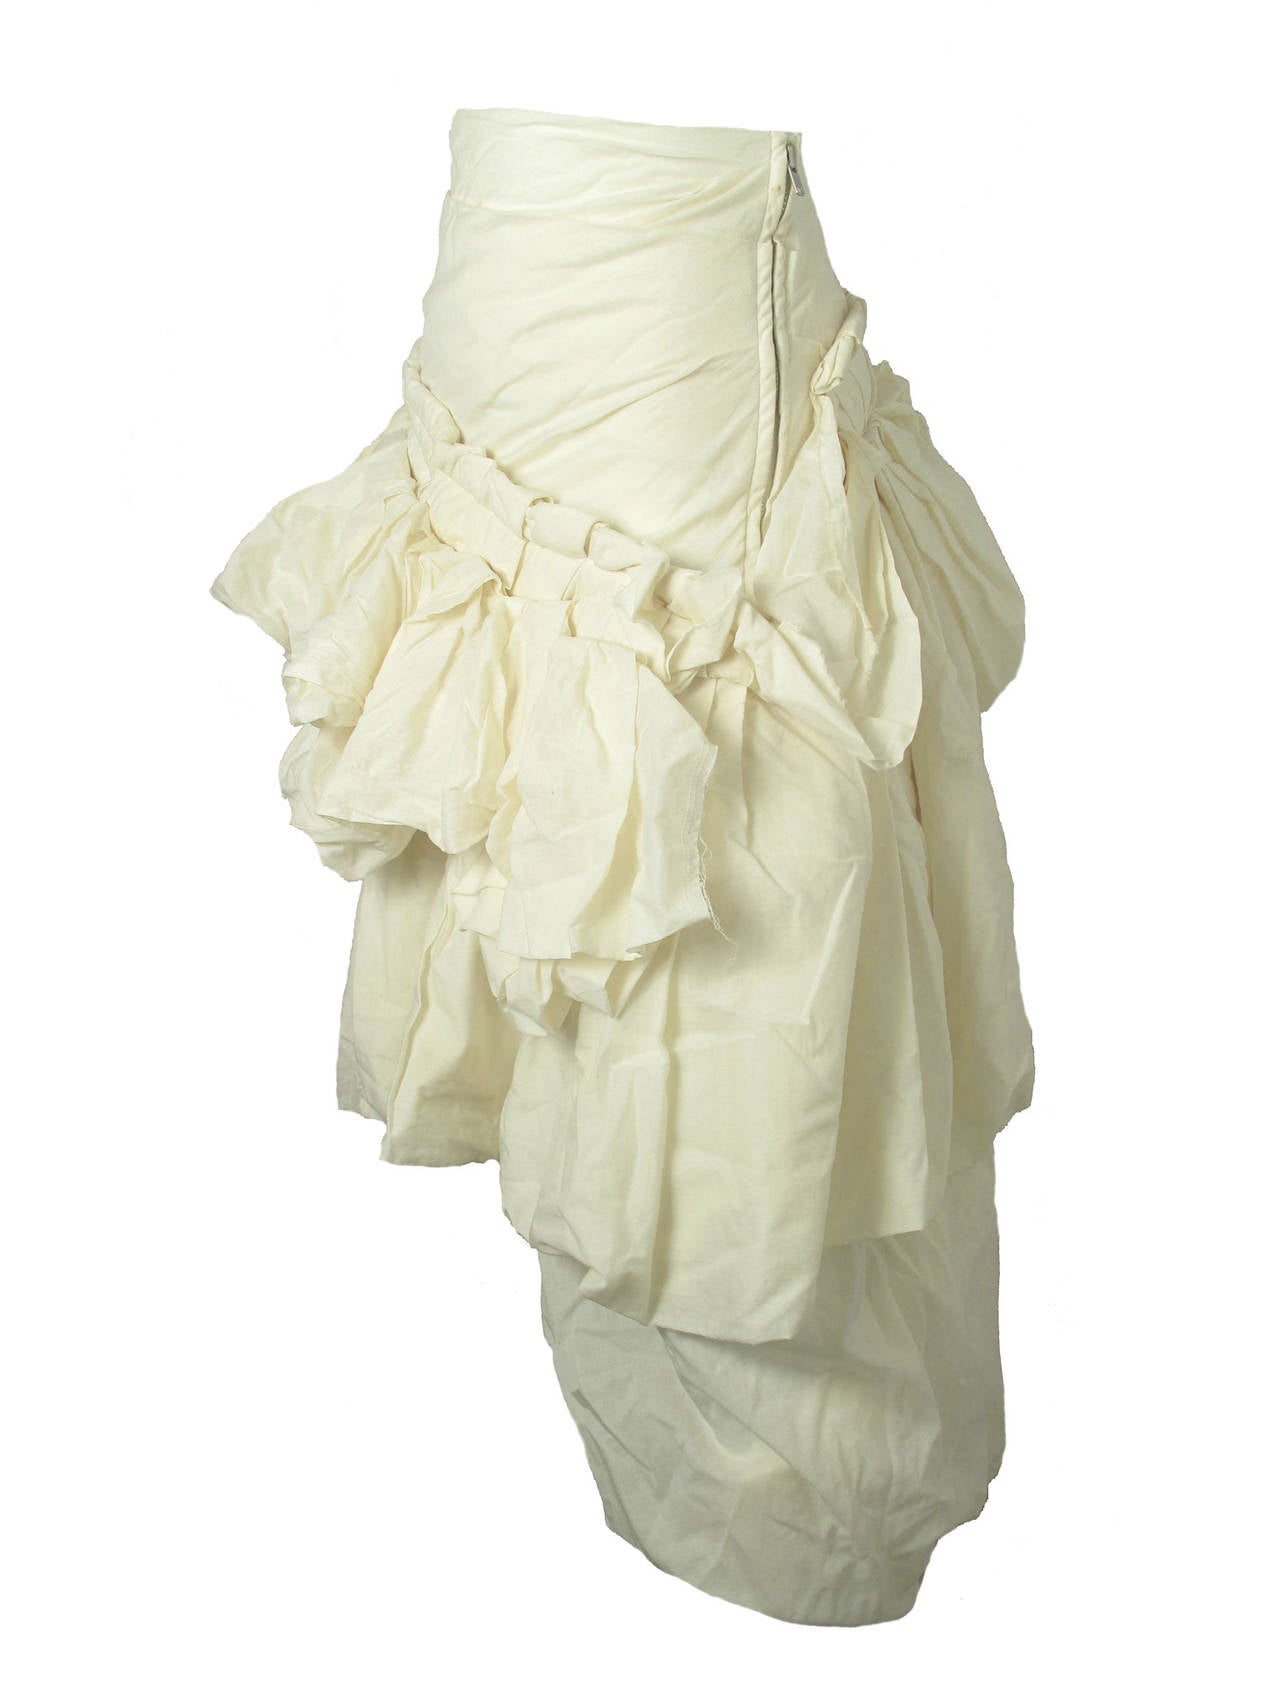 Women's 2005 Comme des Garçons Muslin deconstructed skirt